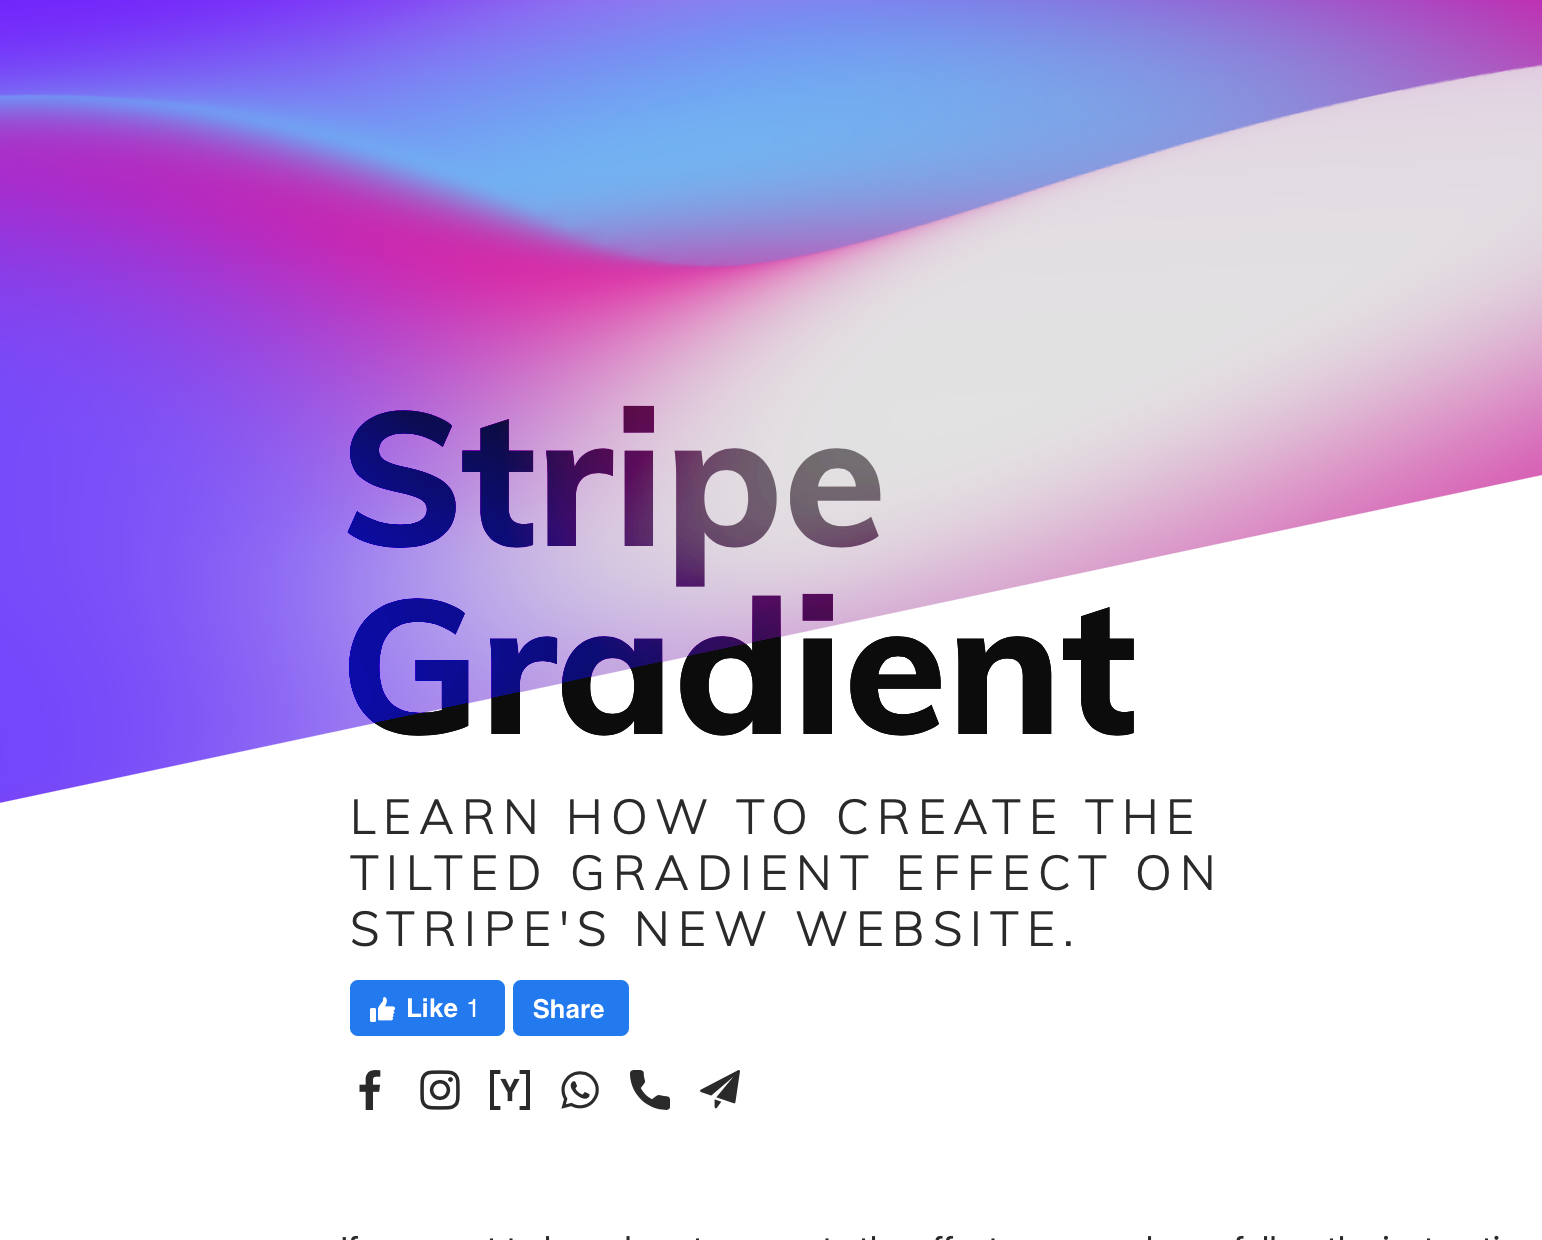 Tạo ra các dải gradient trên trang web Stripe thật không hề khó như bạn nghĩ. Với Kevin Hufnagl, bạn sẽ được hướng dẫn chi tiết và toàn diện về cách tạo hiệu ứng này. Nếu bạn muốn tạo ra một trang web nổi bật và thu hút, thì hãy theo dõi các hướng dẫn của Kevin ngay nào!